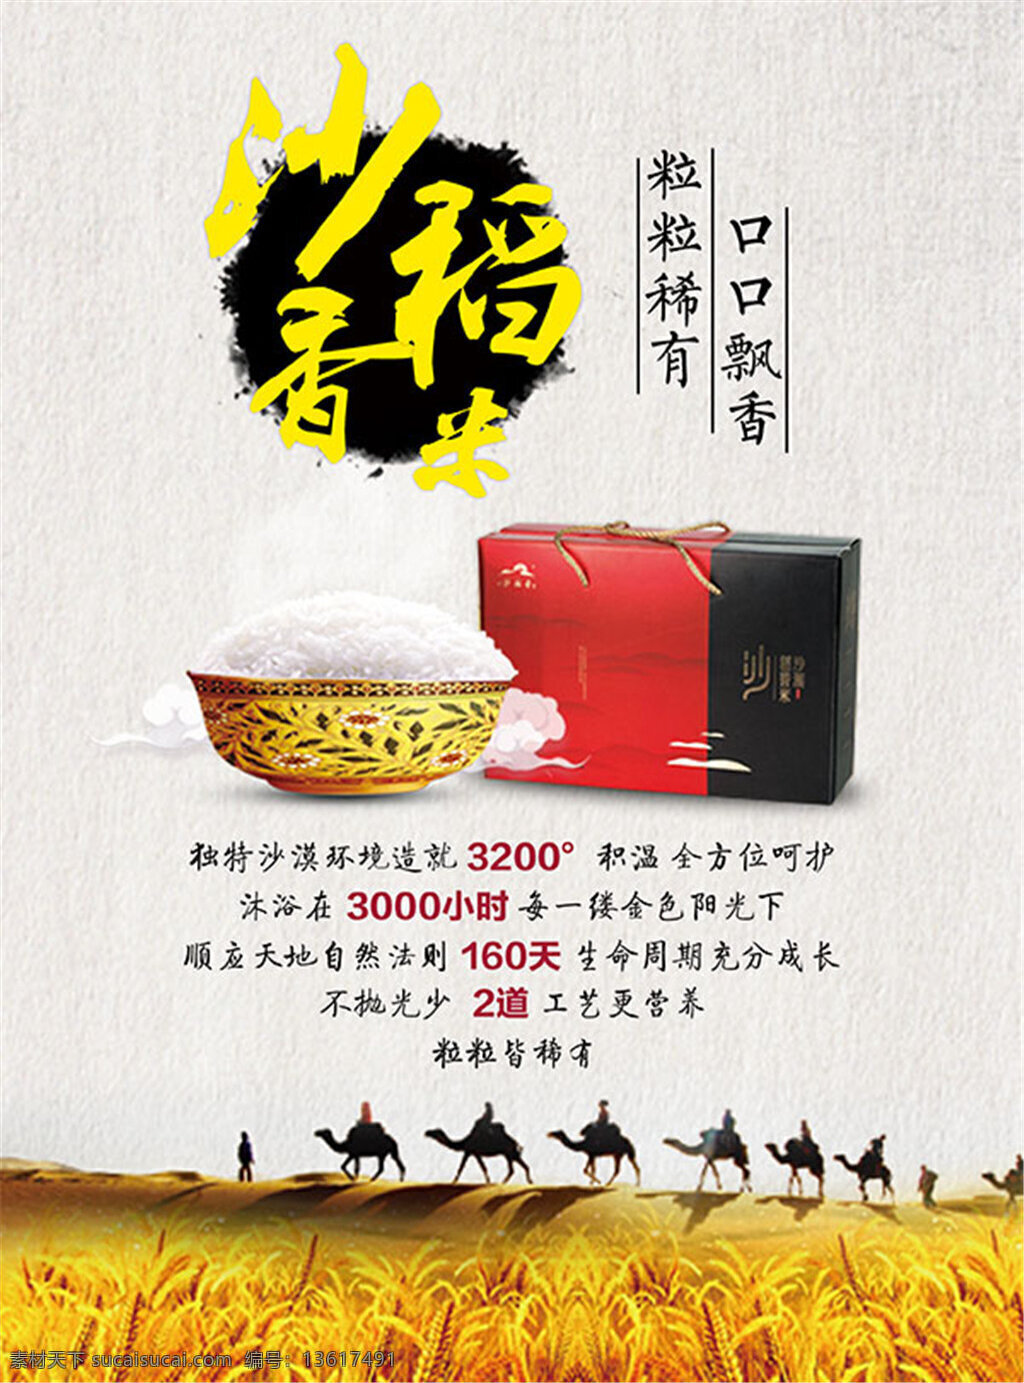 沙稻香米广告 大米广告 骆驼队 米饭 礼盒 墨迹 沙稻香米 粮食